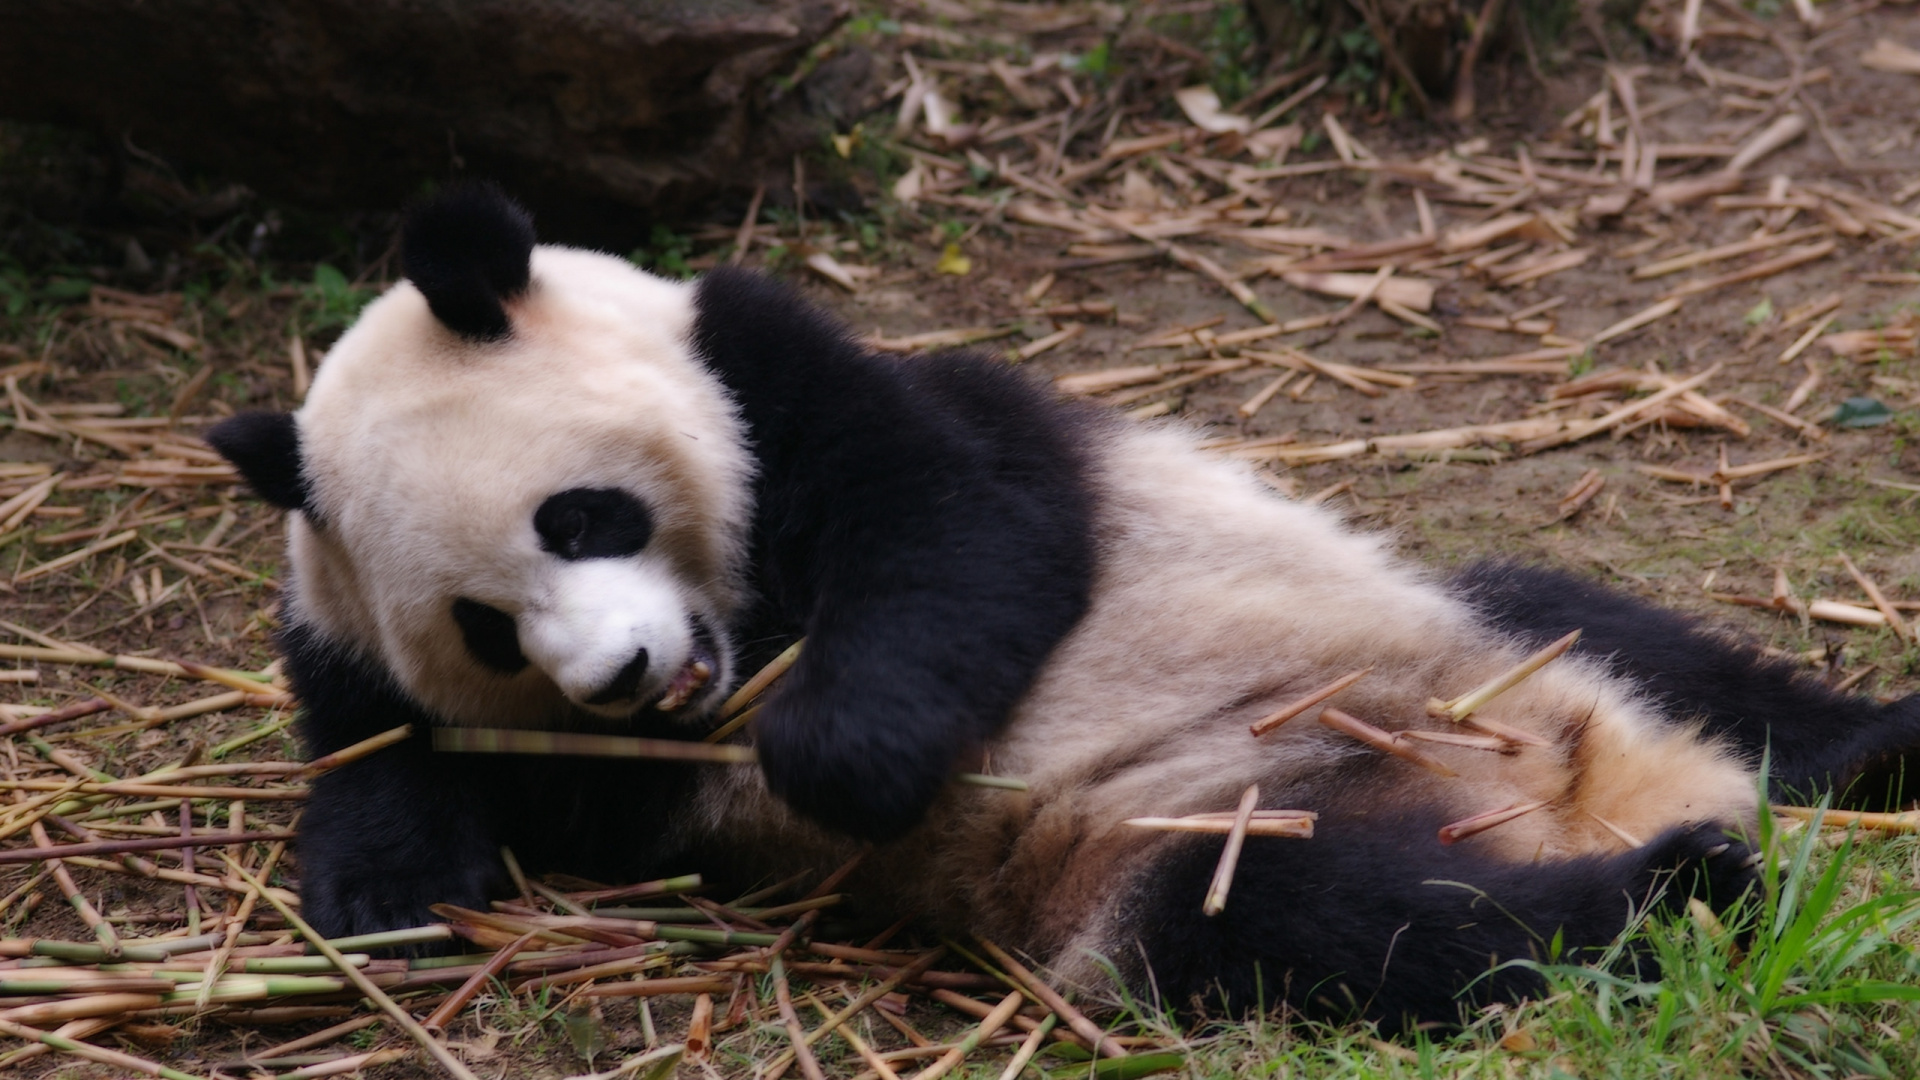 大熊猫, 小熊猫, 陆地动物, 熊, 野生动物 壁纸 1920x1080 允许